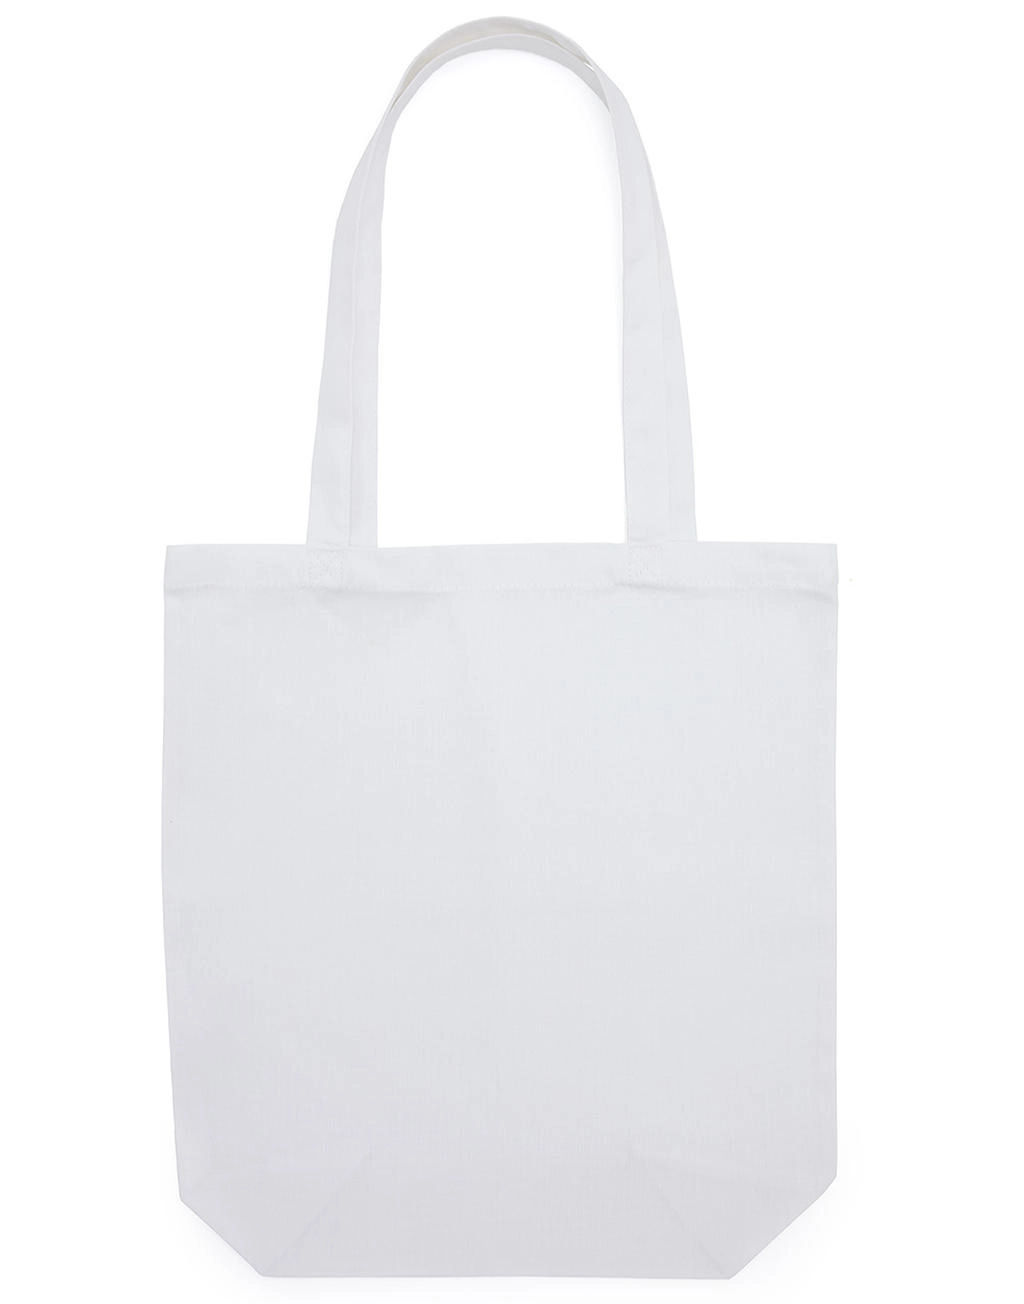 Baby Canvas Cotton Bag LH with Gusset zum Besticken und Bedrucken in der Farbe Snowwhite mit Ihren Logo, Schriftzug oder Motiv.